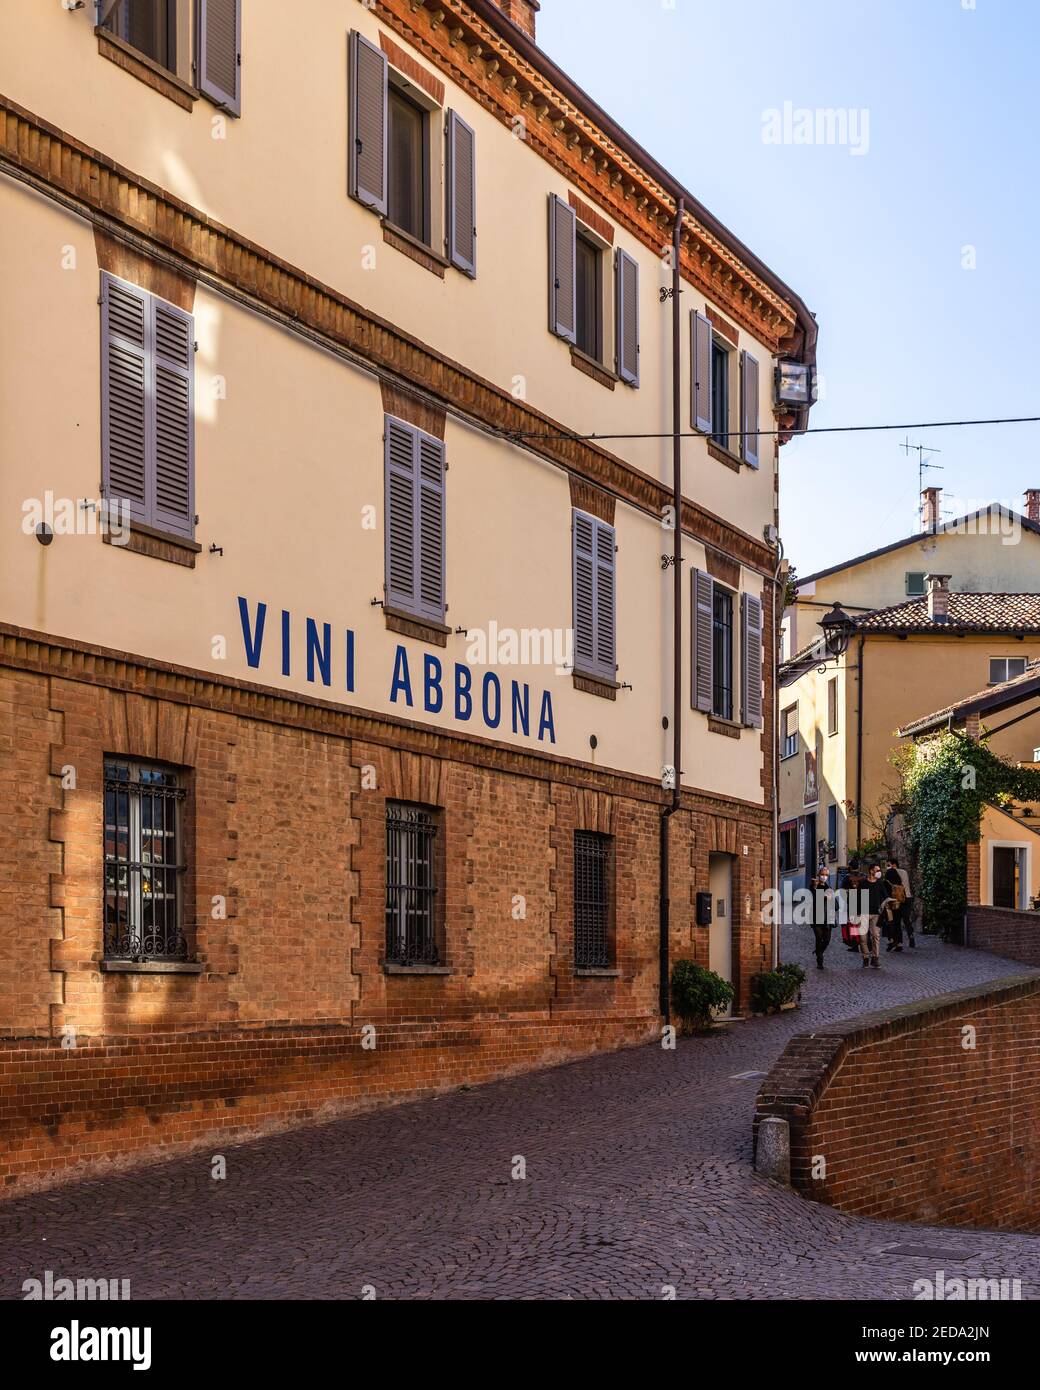 Une rue à Barolo, le village le plus célèbre de la région de Langhe du Piémont. Barolo, Italie, octobre 2020 Banque D'Images